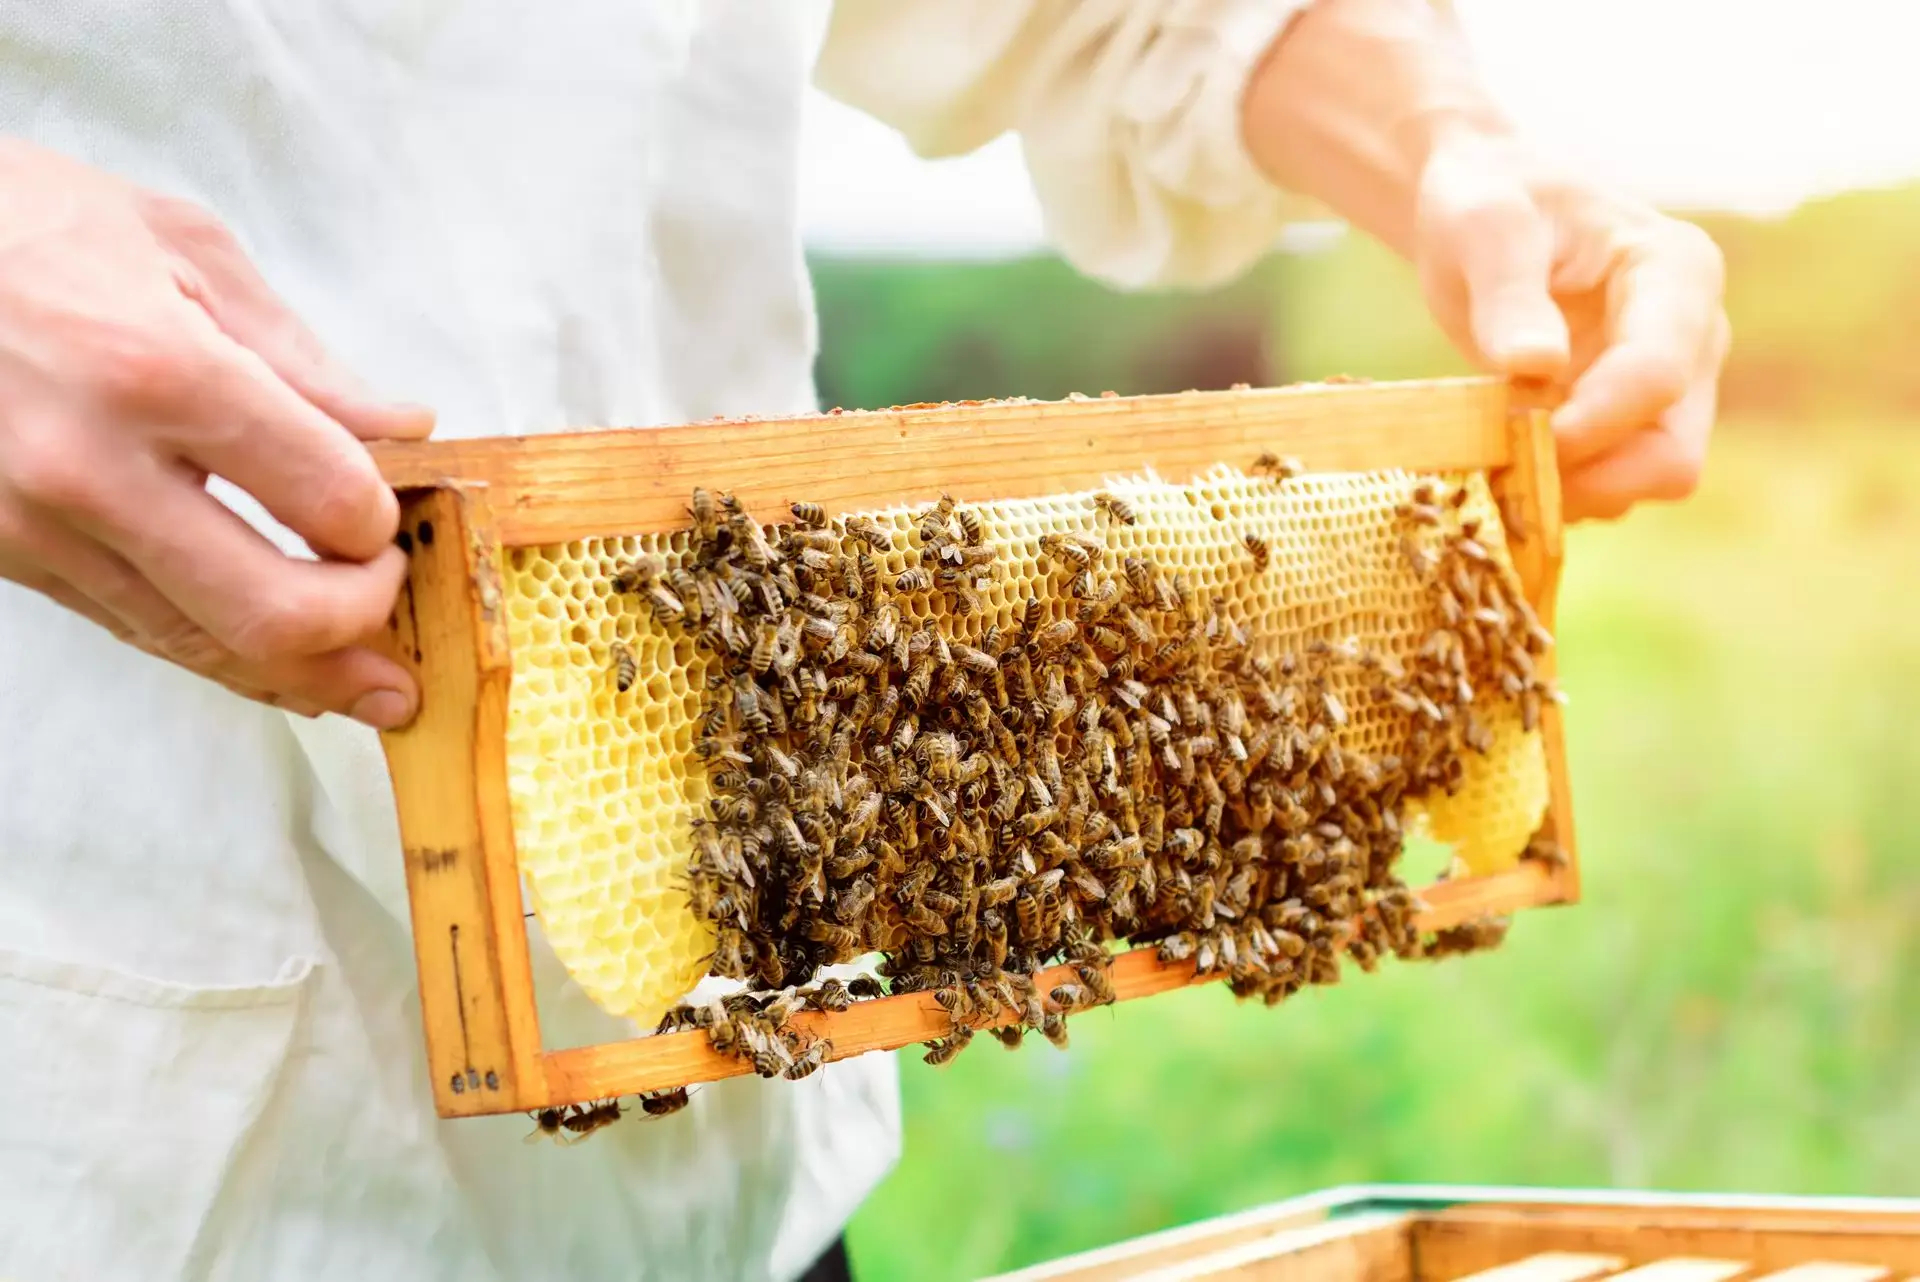 Vaporisateur de fumée d'abeille en acier inoxydable, Fumeur, abeille  Apiculture, équipement pour l'apiculture fumé dédié 1 pièce - Historique  des prix et avis, Vendeur AliExpress - Talk-Satisfied Gardening Store